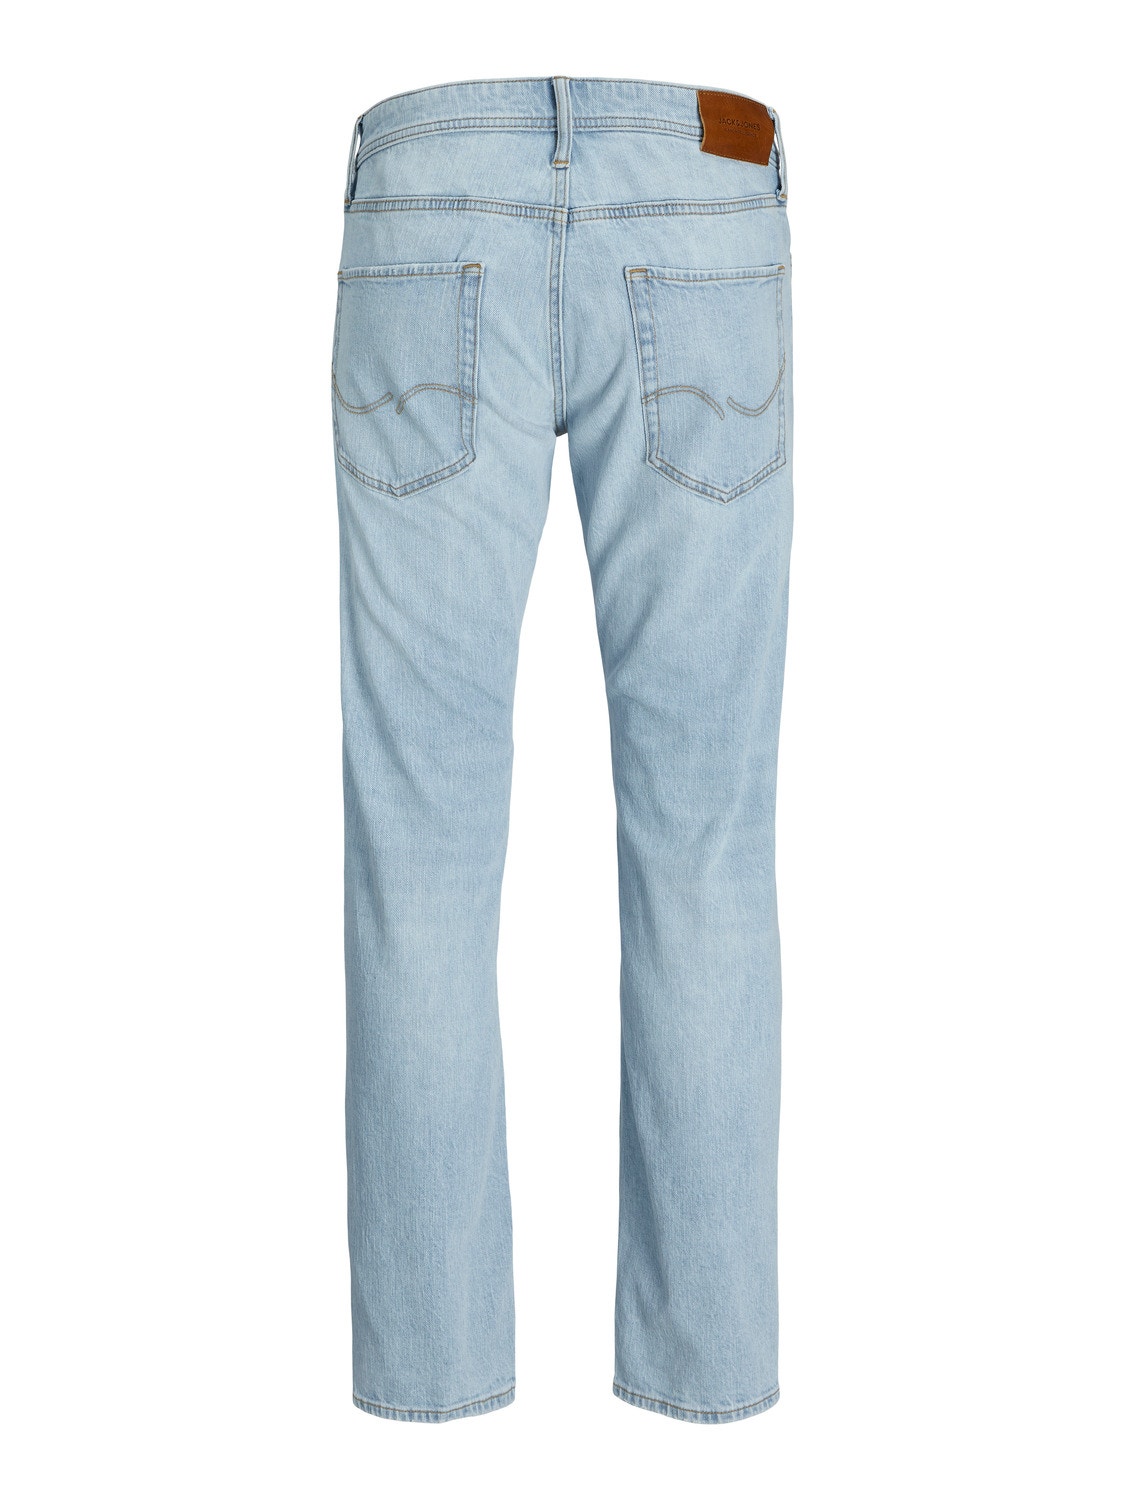 Jack & Jones JJIMIKE JJORIGINAL SBD 516 Jeans Tapered Fit -Blue Denim - 12249059